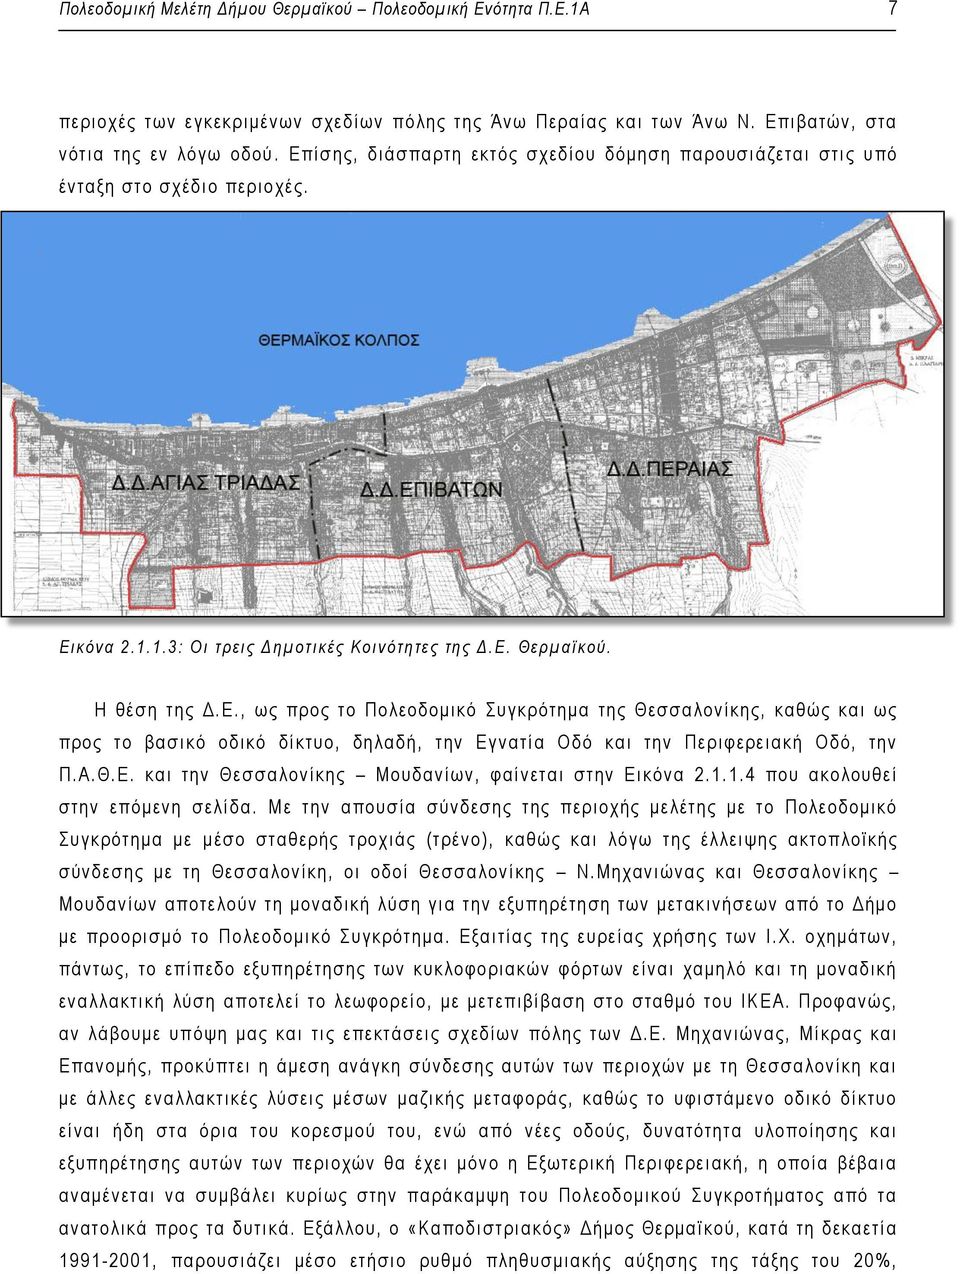 Η θέση της Δ.Ε., ως προς το Πολεοδομικό Συγκ ρότημα της Θεσσαλονίκης, καθώς και ως προς το βασι κό οδικό δίκτυο, δηλαδή, τ ην Εγ νατία Οδό και την Περιφερειακή Οδό, την Π.Α.Θ. Ε. και την Θε σσα λονίκης Μουδανίων, φαίνεται στην Εικόνα 2.